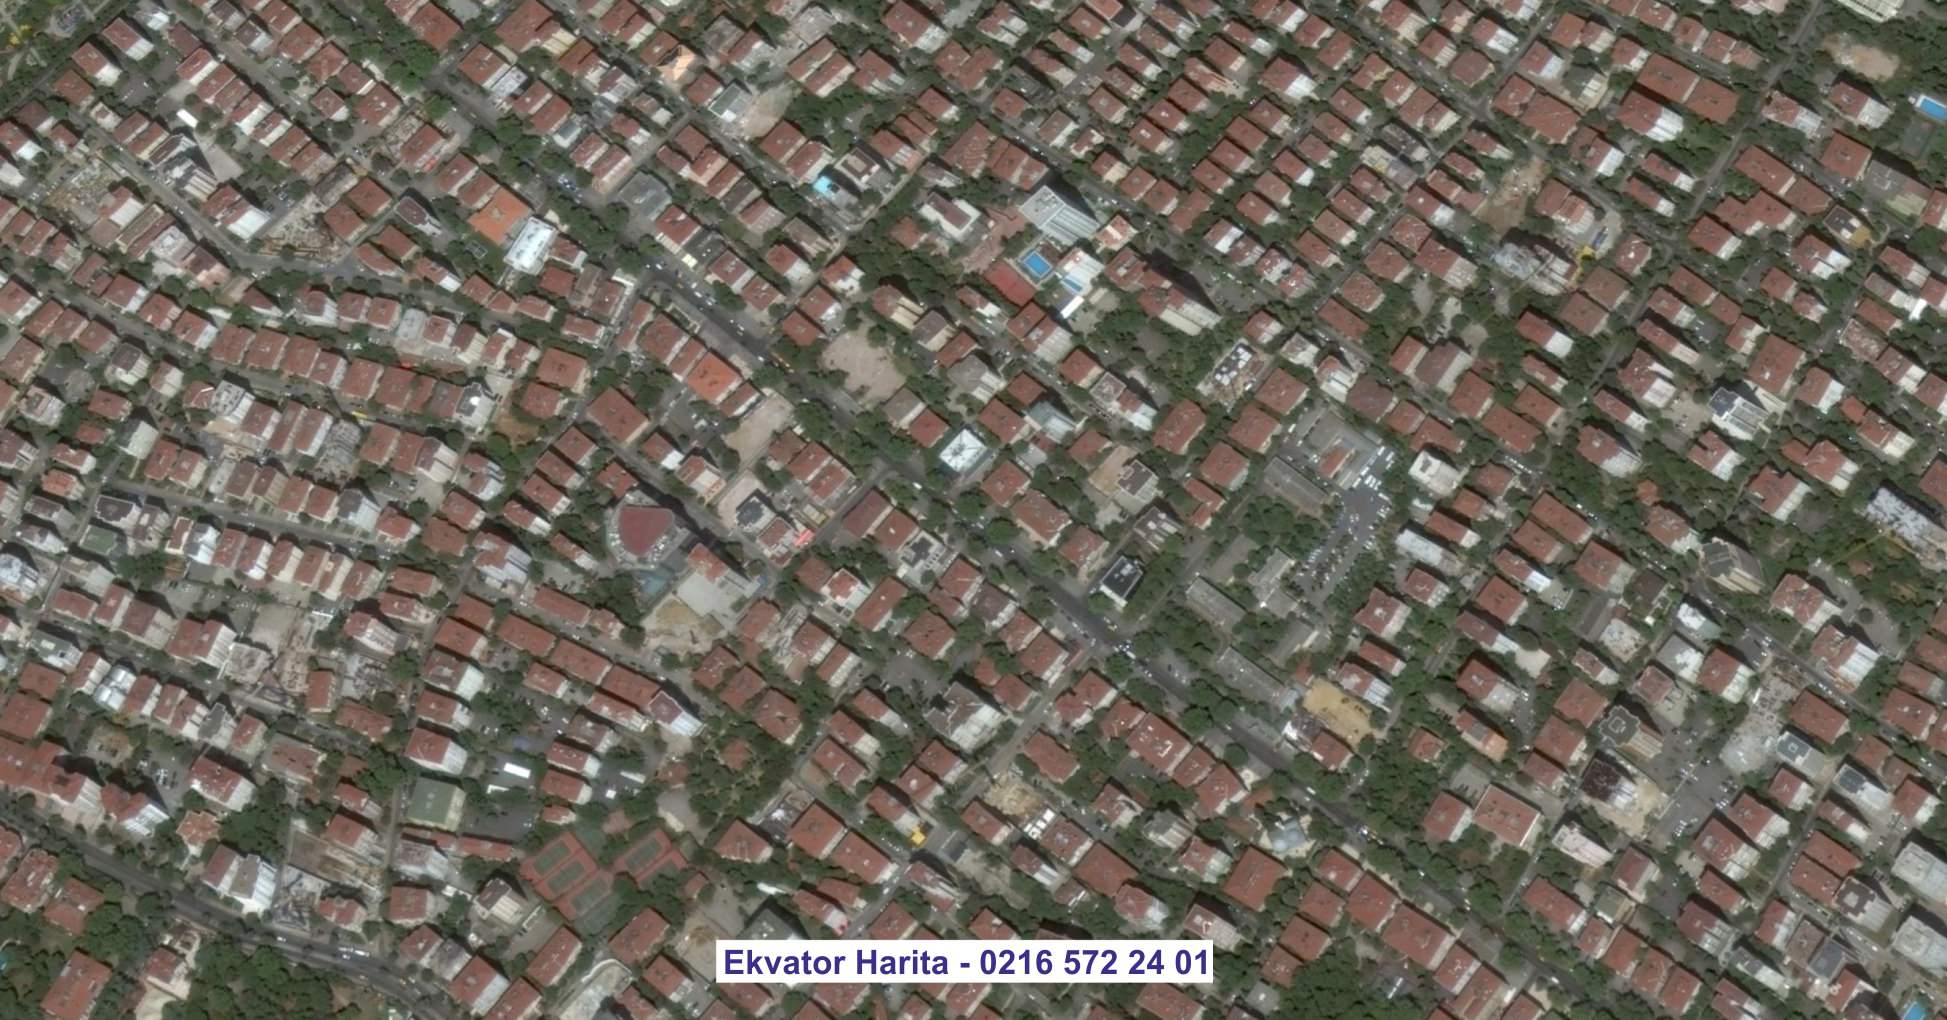 Narlıdere Uydu Görüntüsü Örnek Fotoğrafı